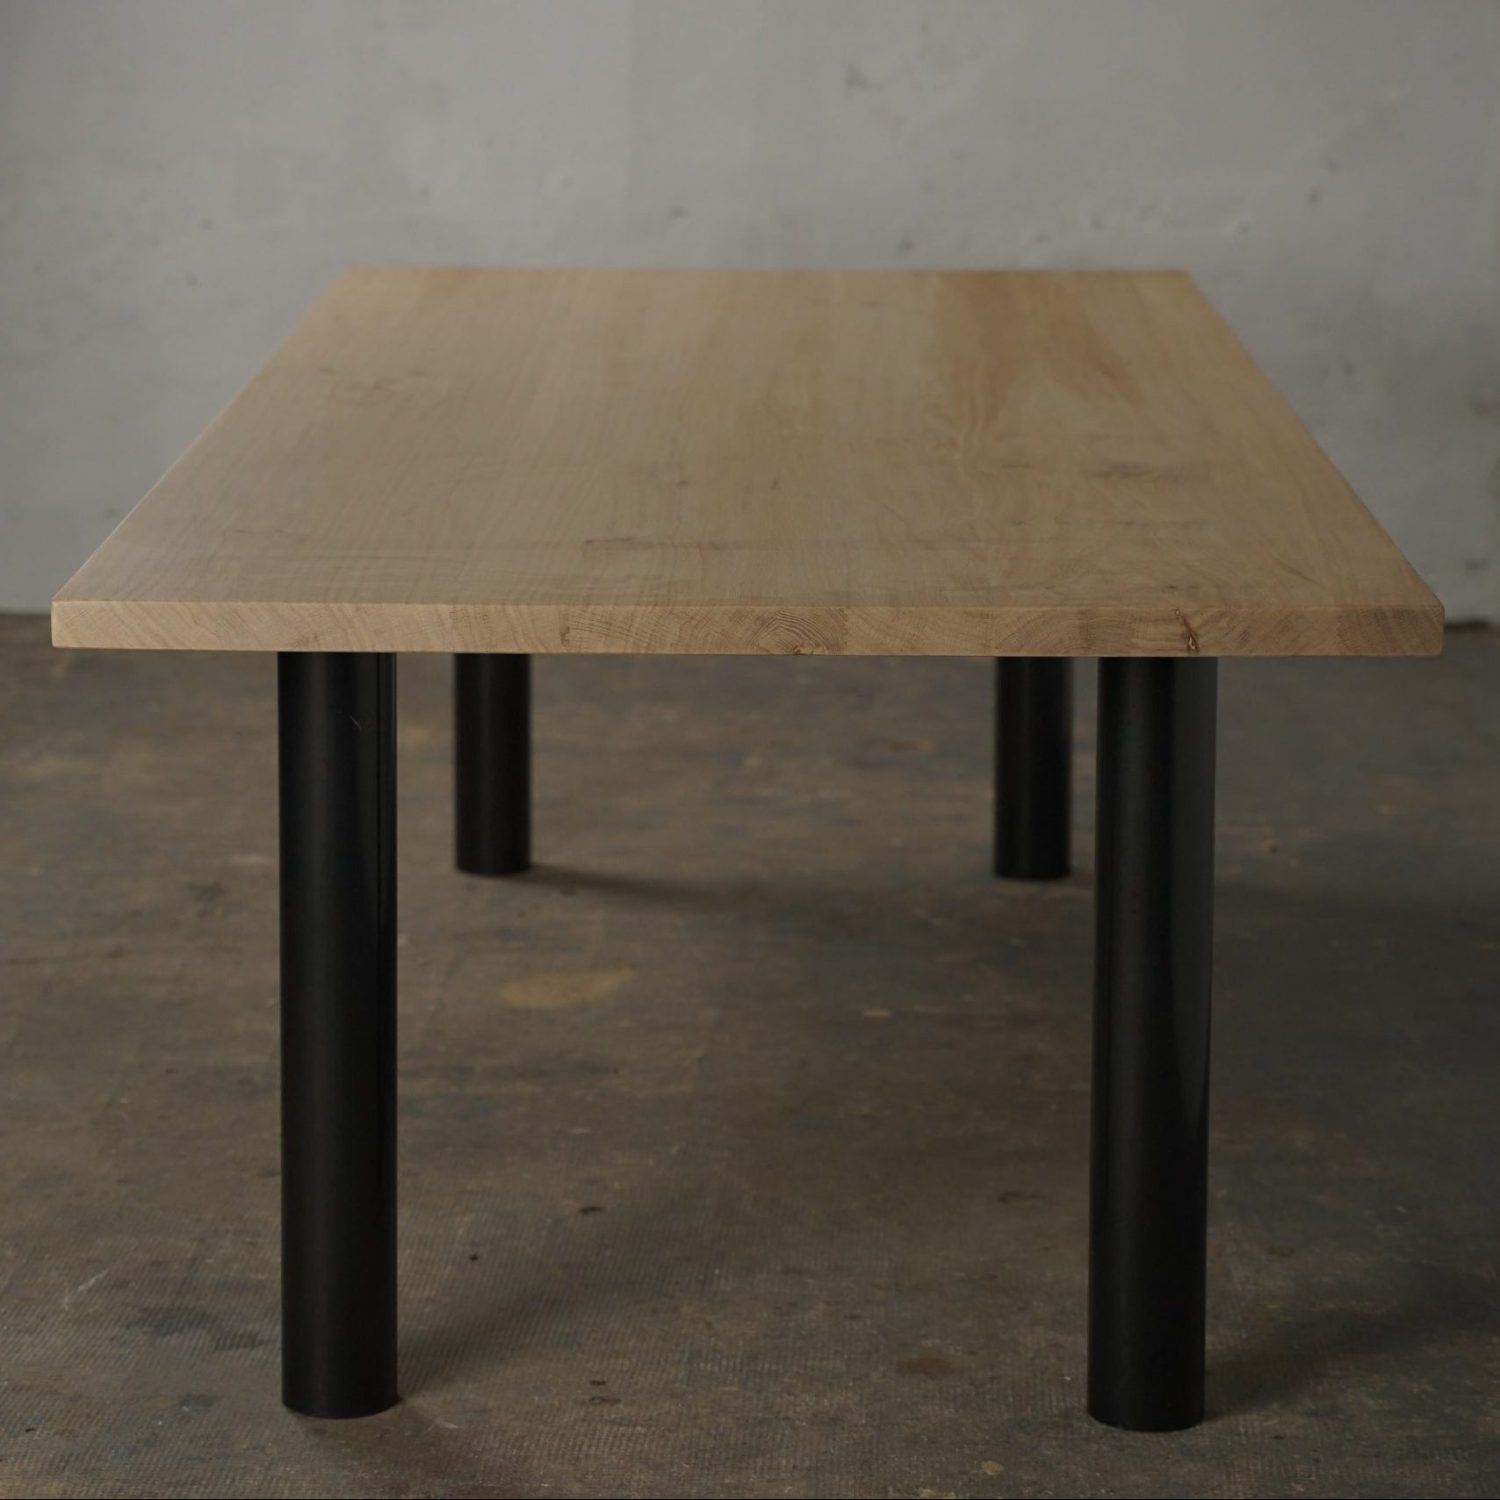 Table en bois massif et fer avec une touche de modernité